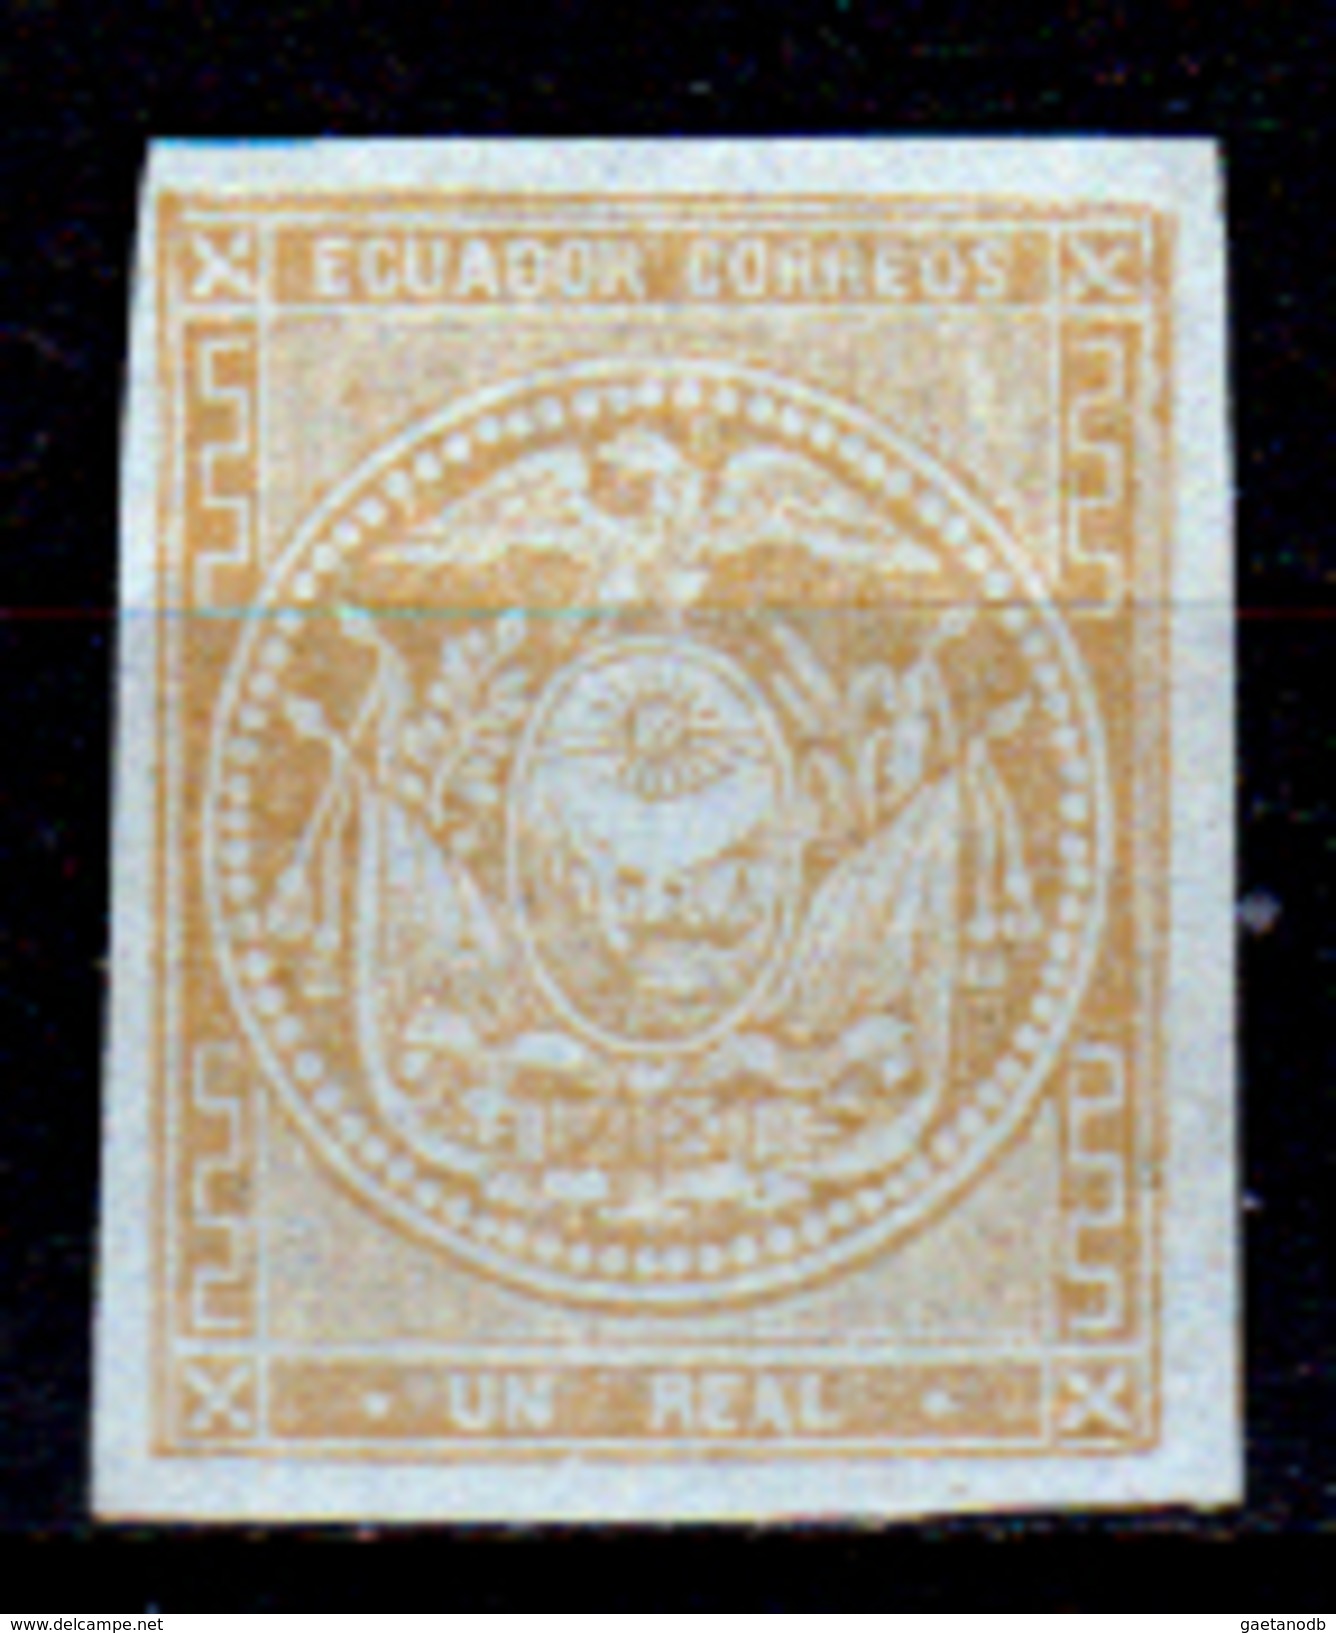 Ecuador-0004 - 1865-72: Yvert & Tellier N. 3 (sg) NG - Senza Difetti Occulti. - Equateur